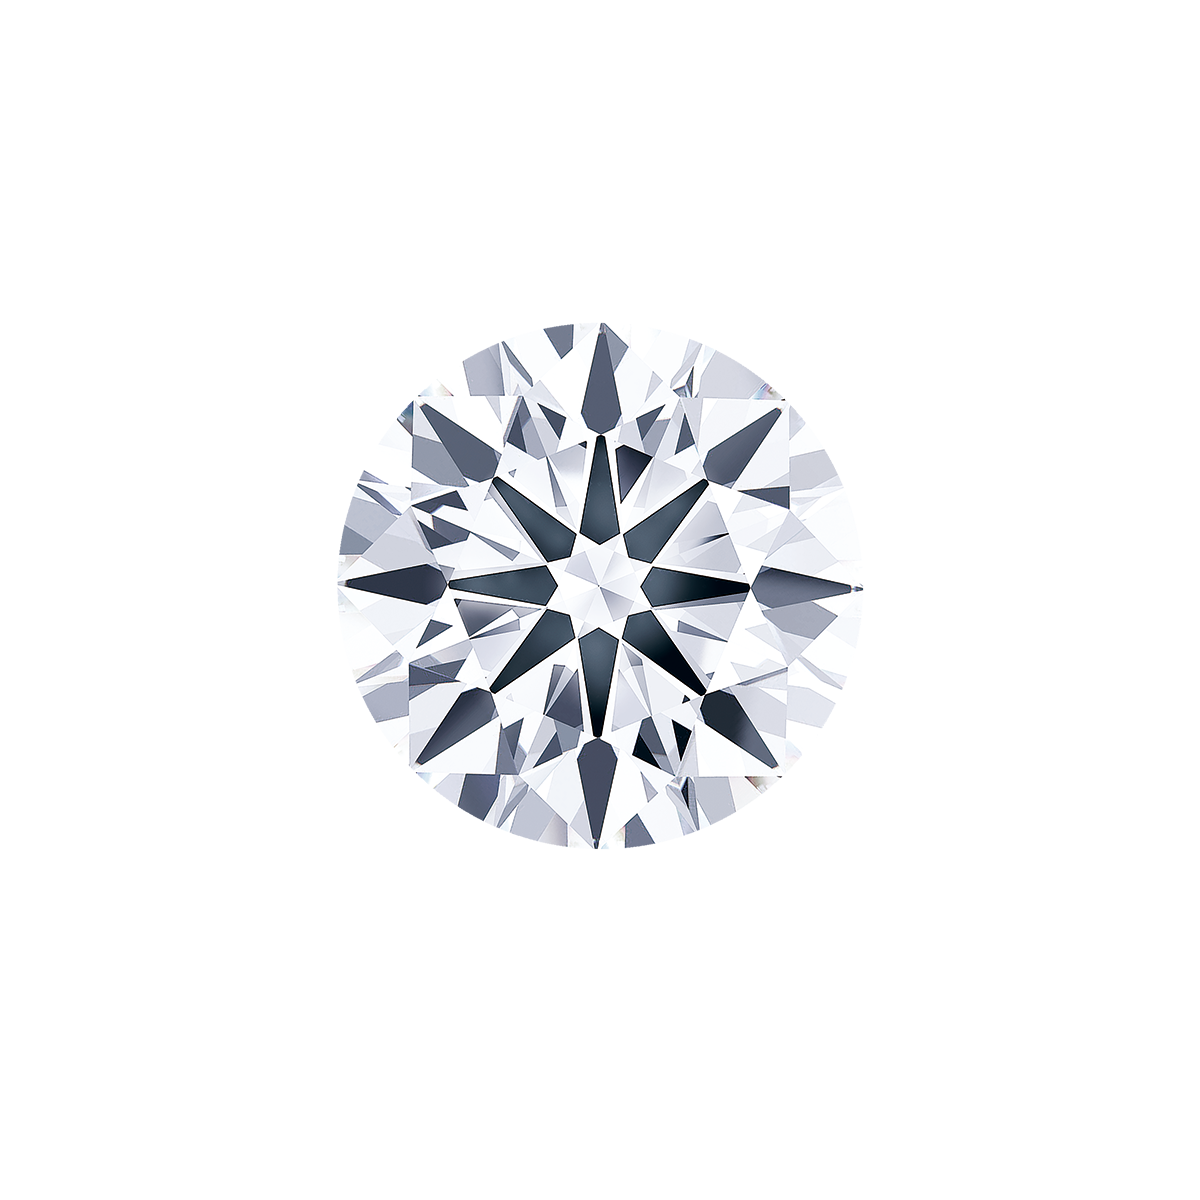 GIA 12.89 克拉 白鑽裸石
Impressive Unmounted Diamond 